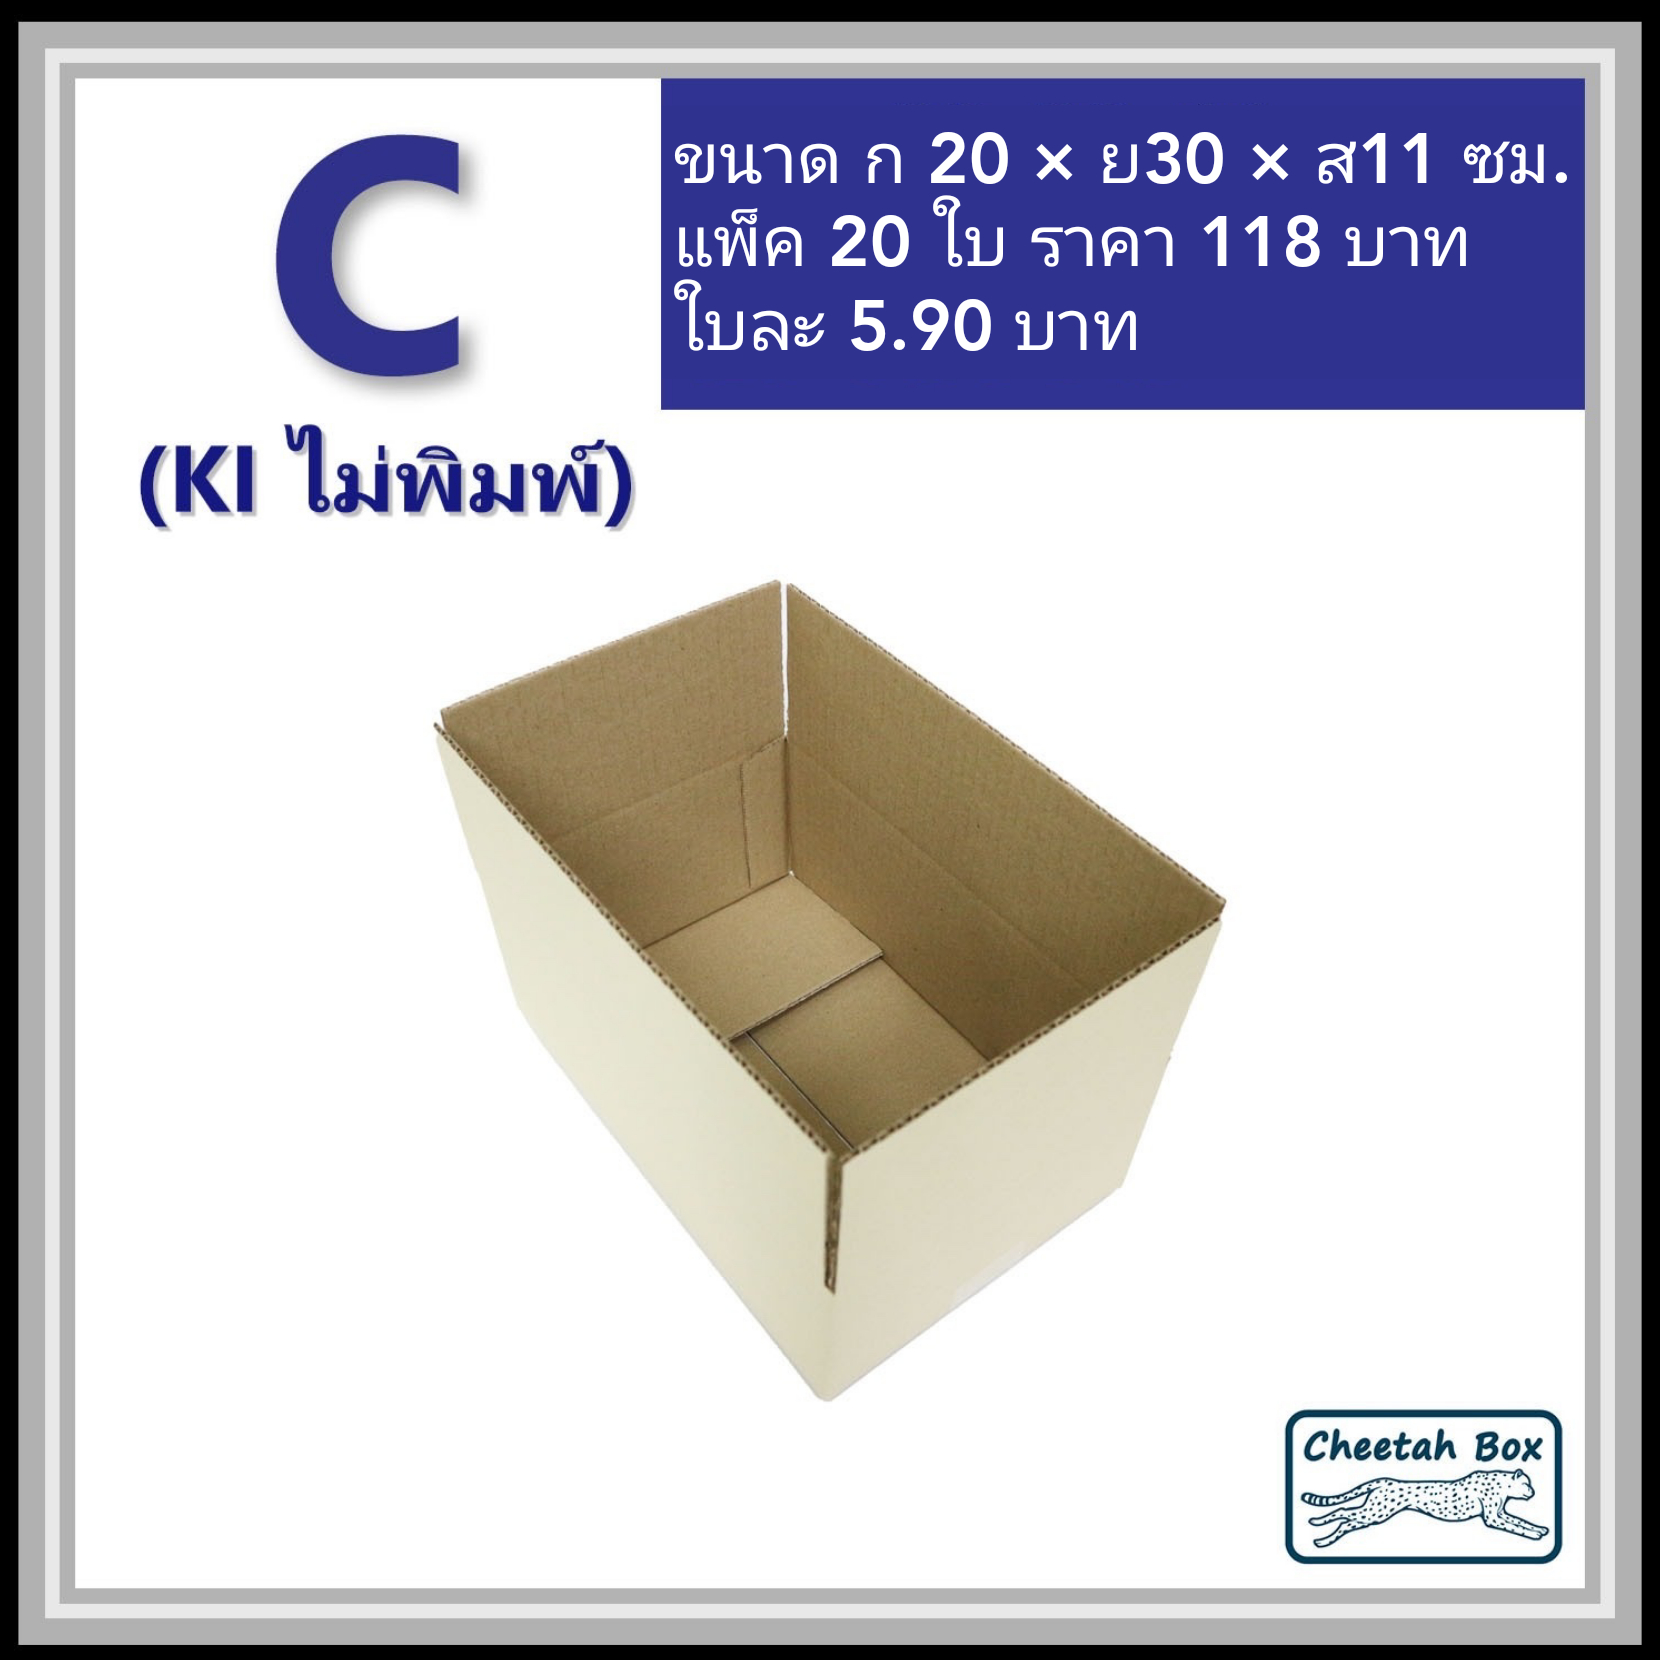 กล่องพัสดุ 3 ชั้น รหัส C (S:Kerry) ไม่พิมพ์ (Post Box) 20W x 30L x 11H cm.